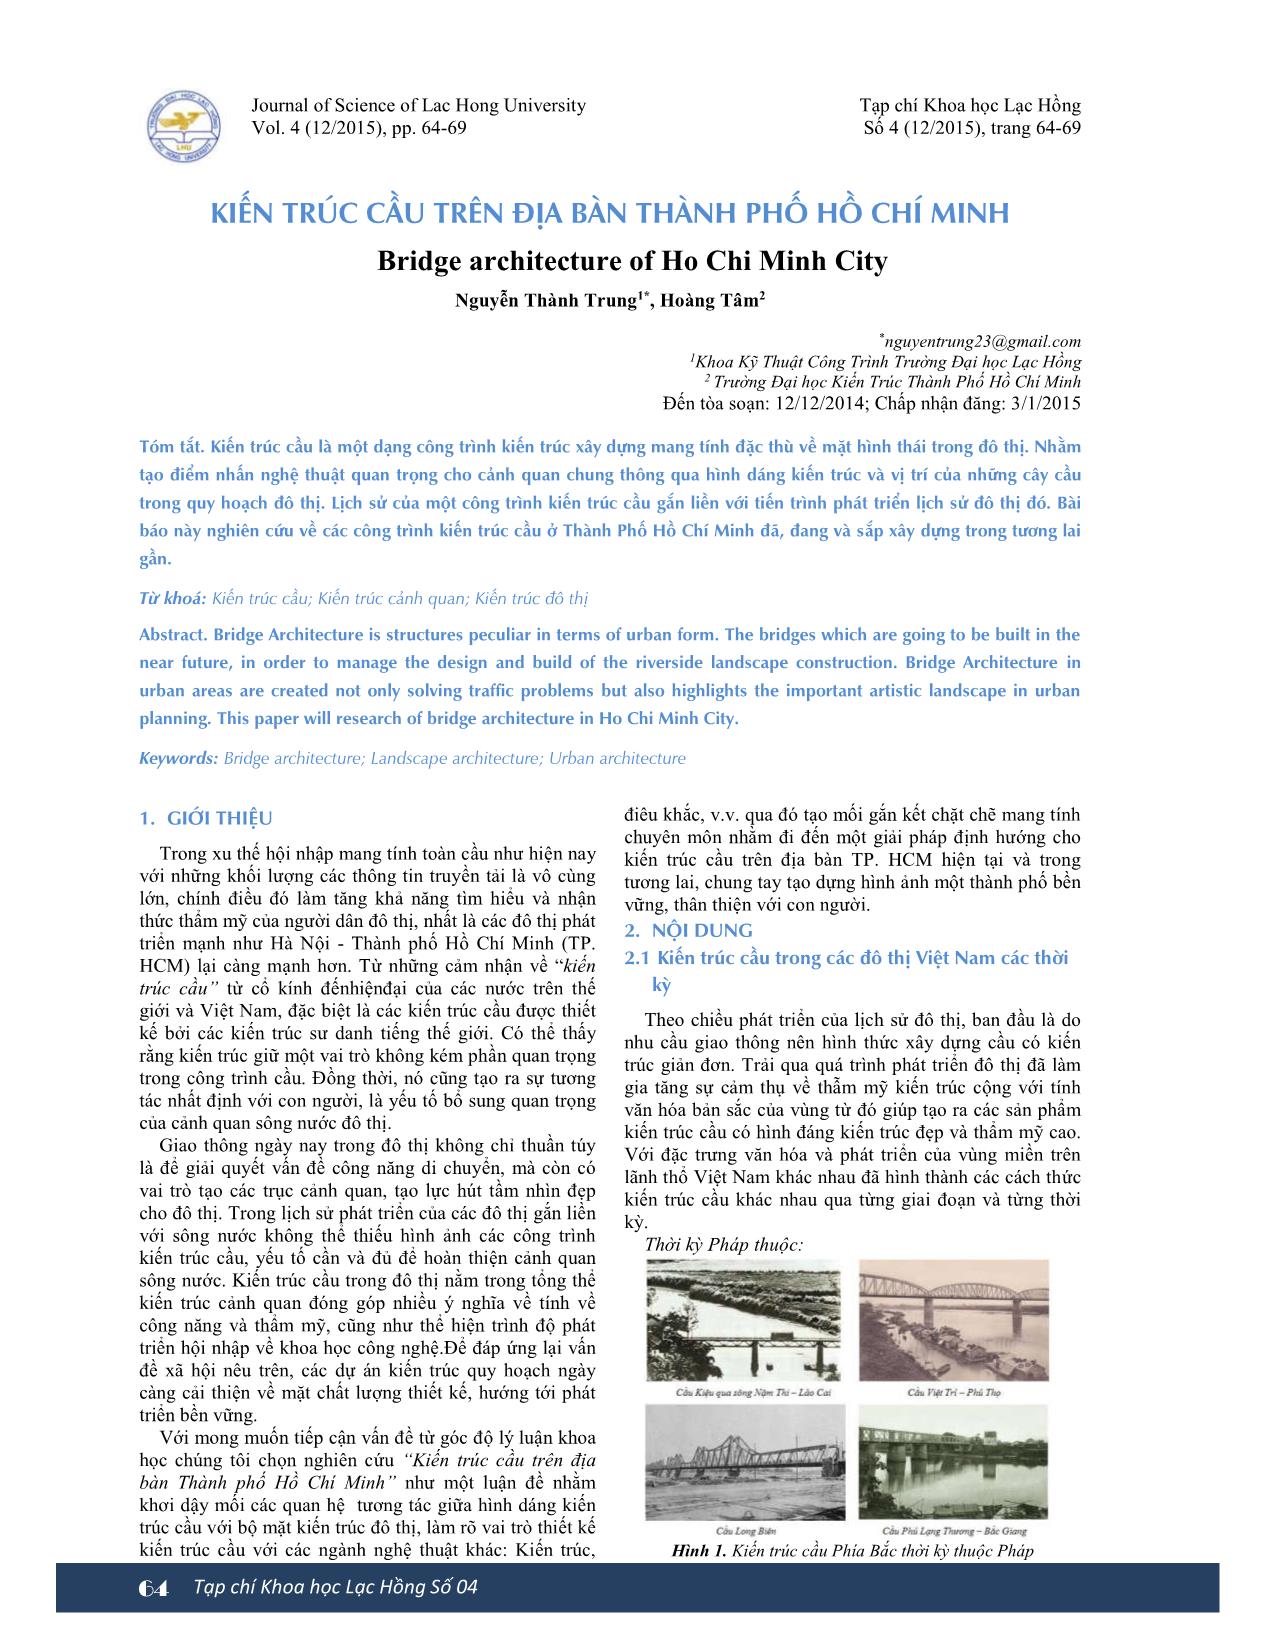 Kiến trúc cầu trên địa bàn thành phố Hồ Chí Minh trang 1